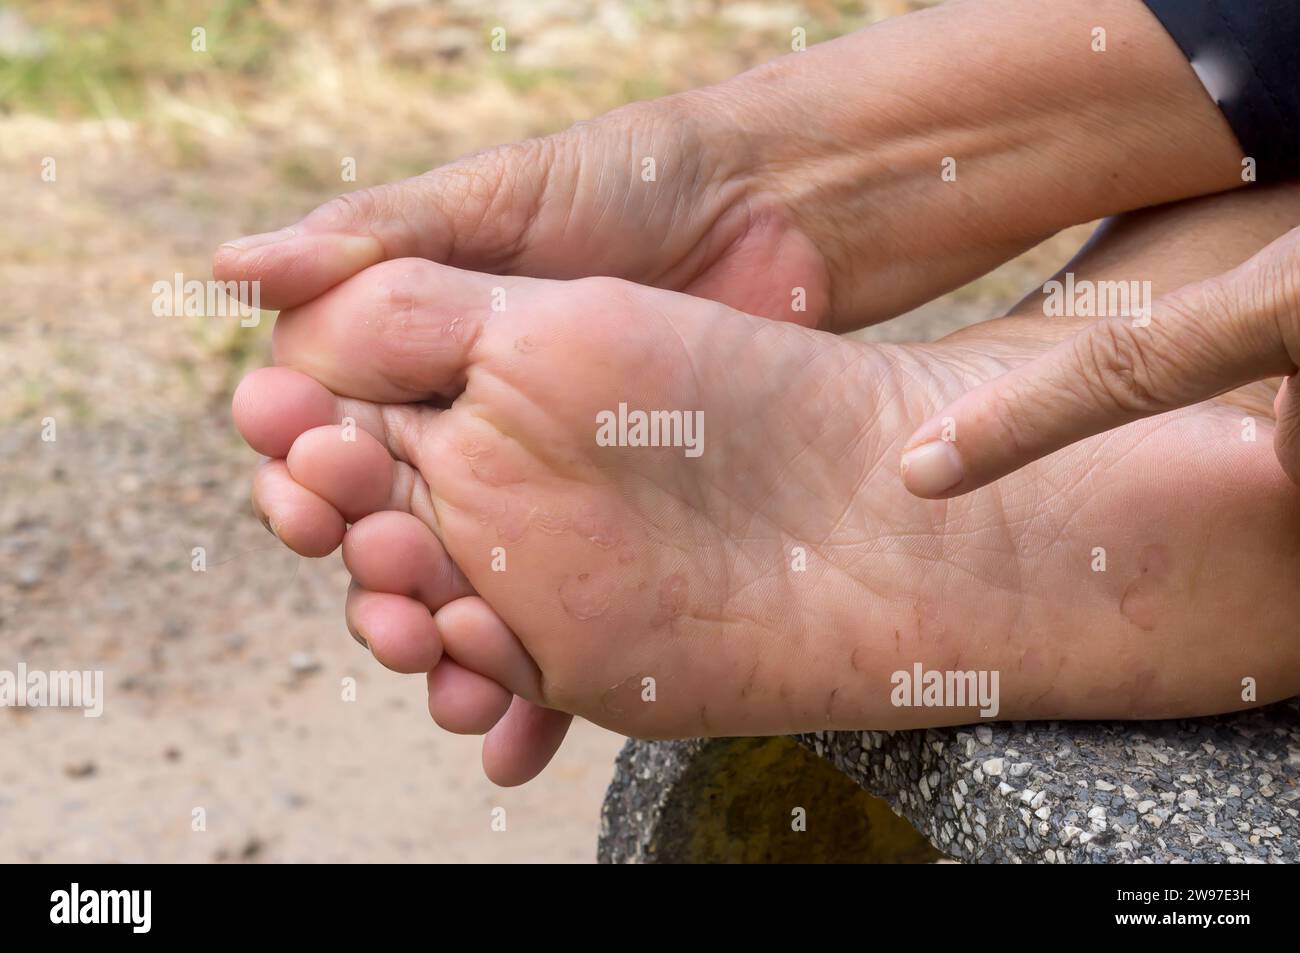 Frau Hand zeigt auf Fußschmerzen, die durch Athleten Fuß verursacht wurden. Der Patient leidet an einer schweren Fußhauterkrankung. Nahaufnahme der Fußkrankheit Stockfoto